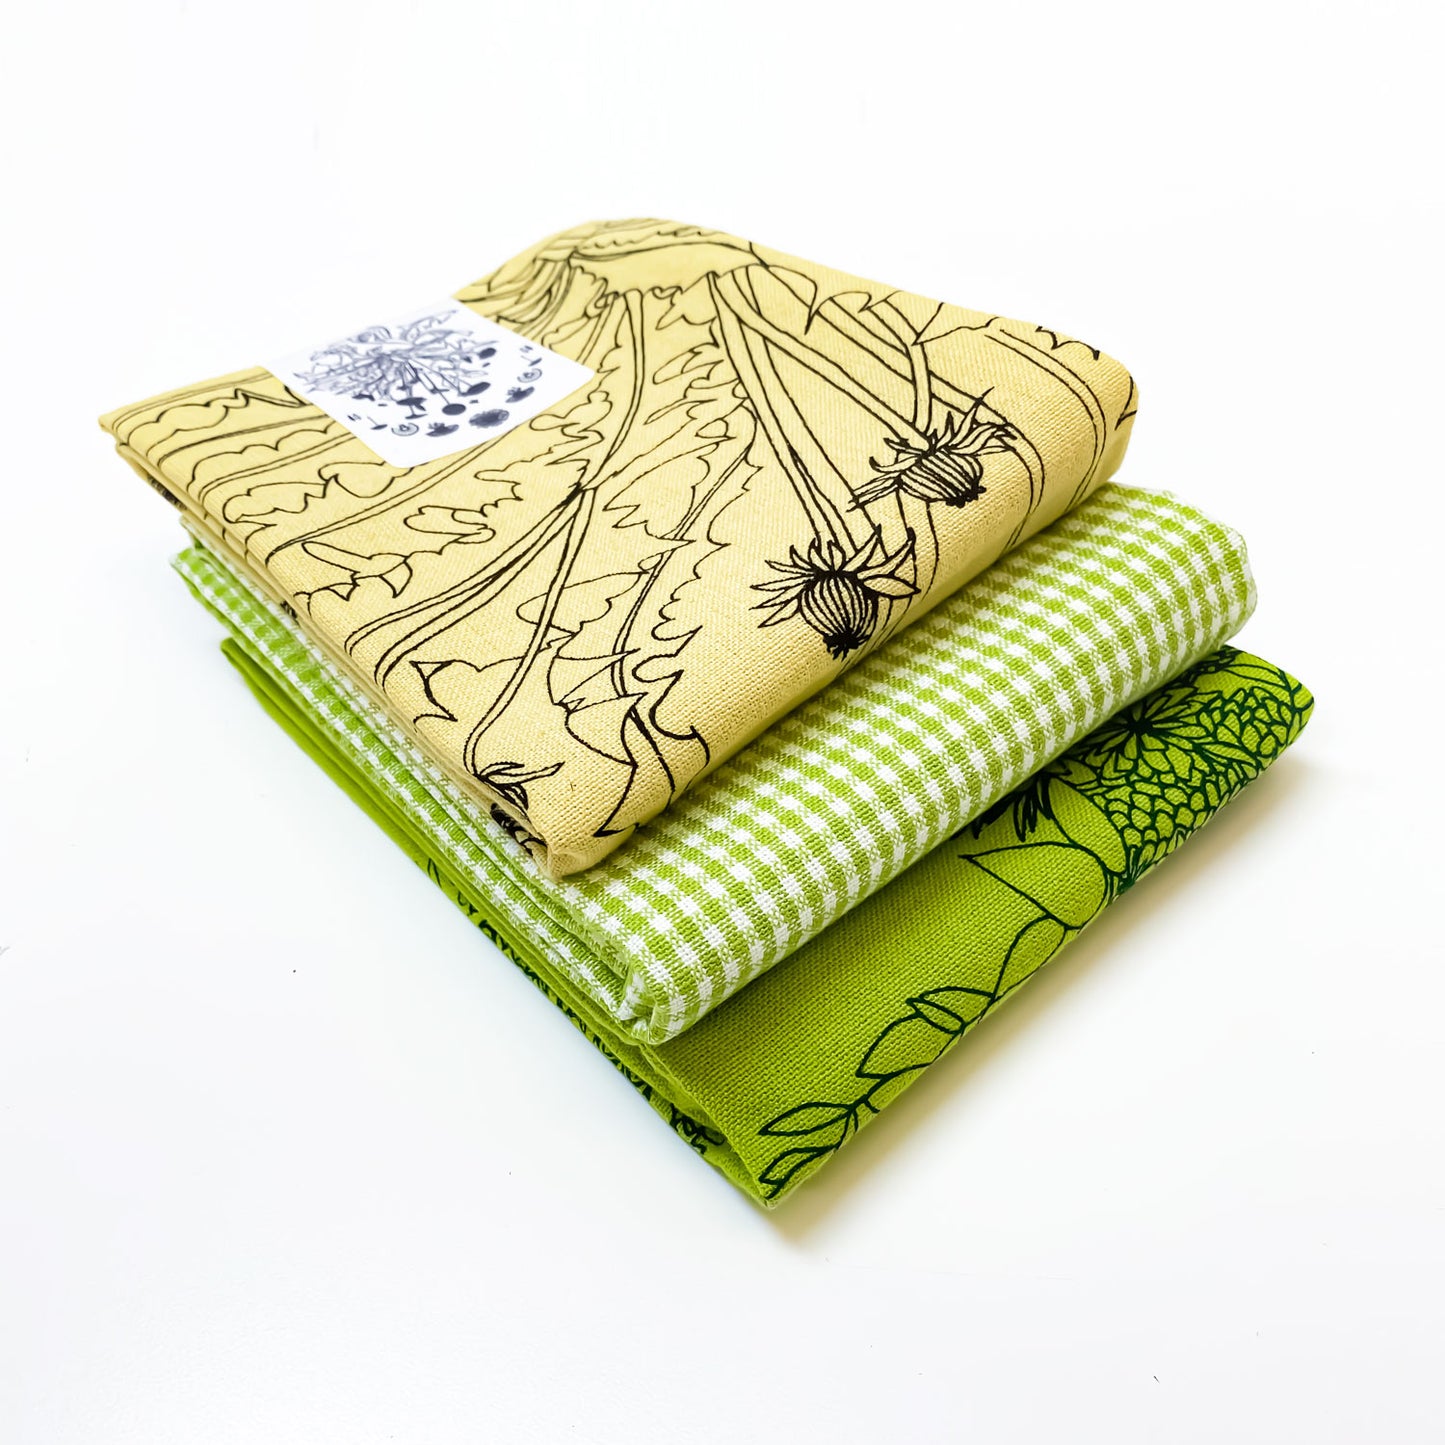 Yellow Gardening Botanical Handprinted Artisan Tea Towel Set